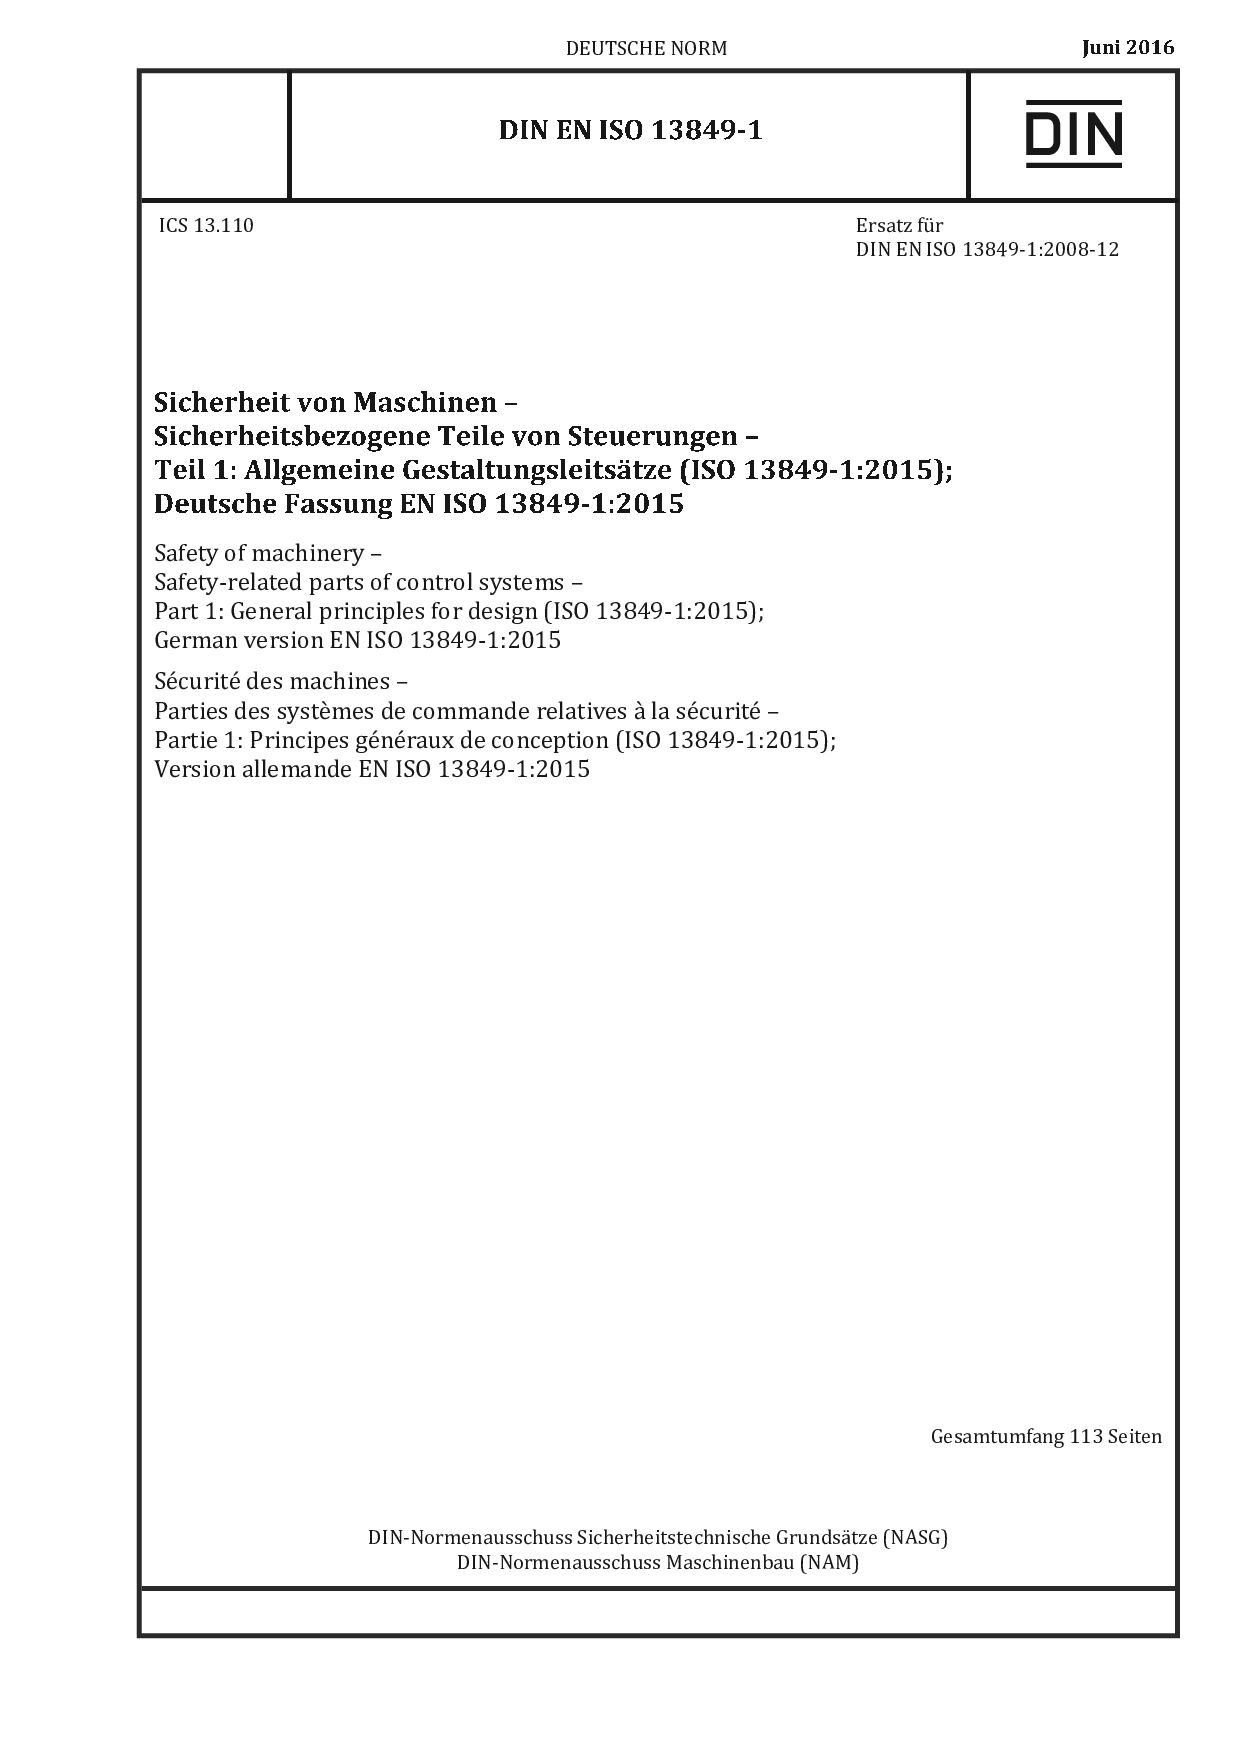 DIN EN ISO 13849-1:2016封面图